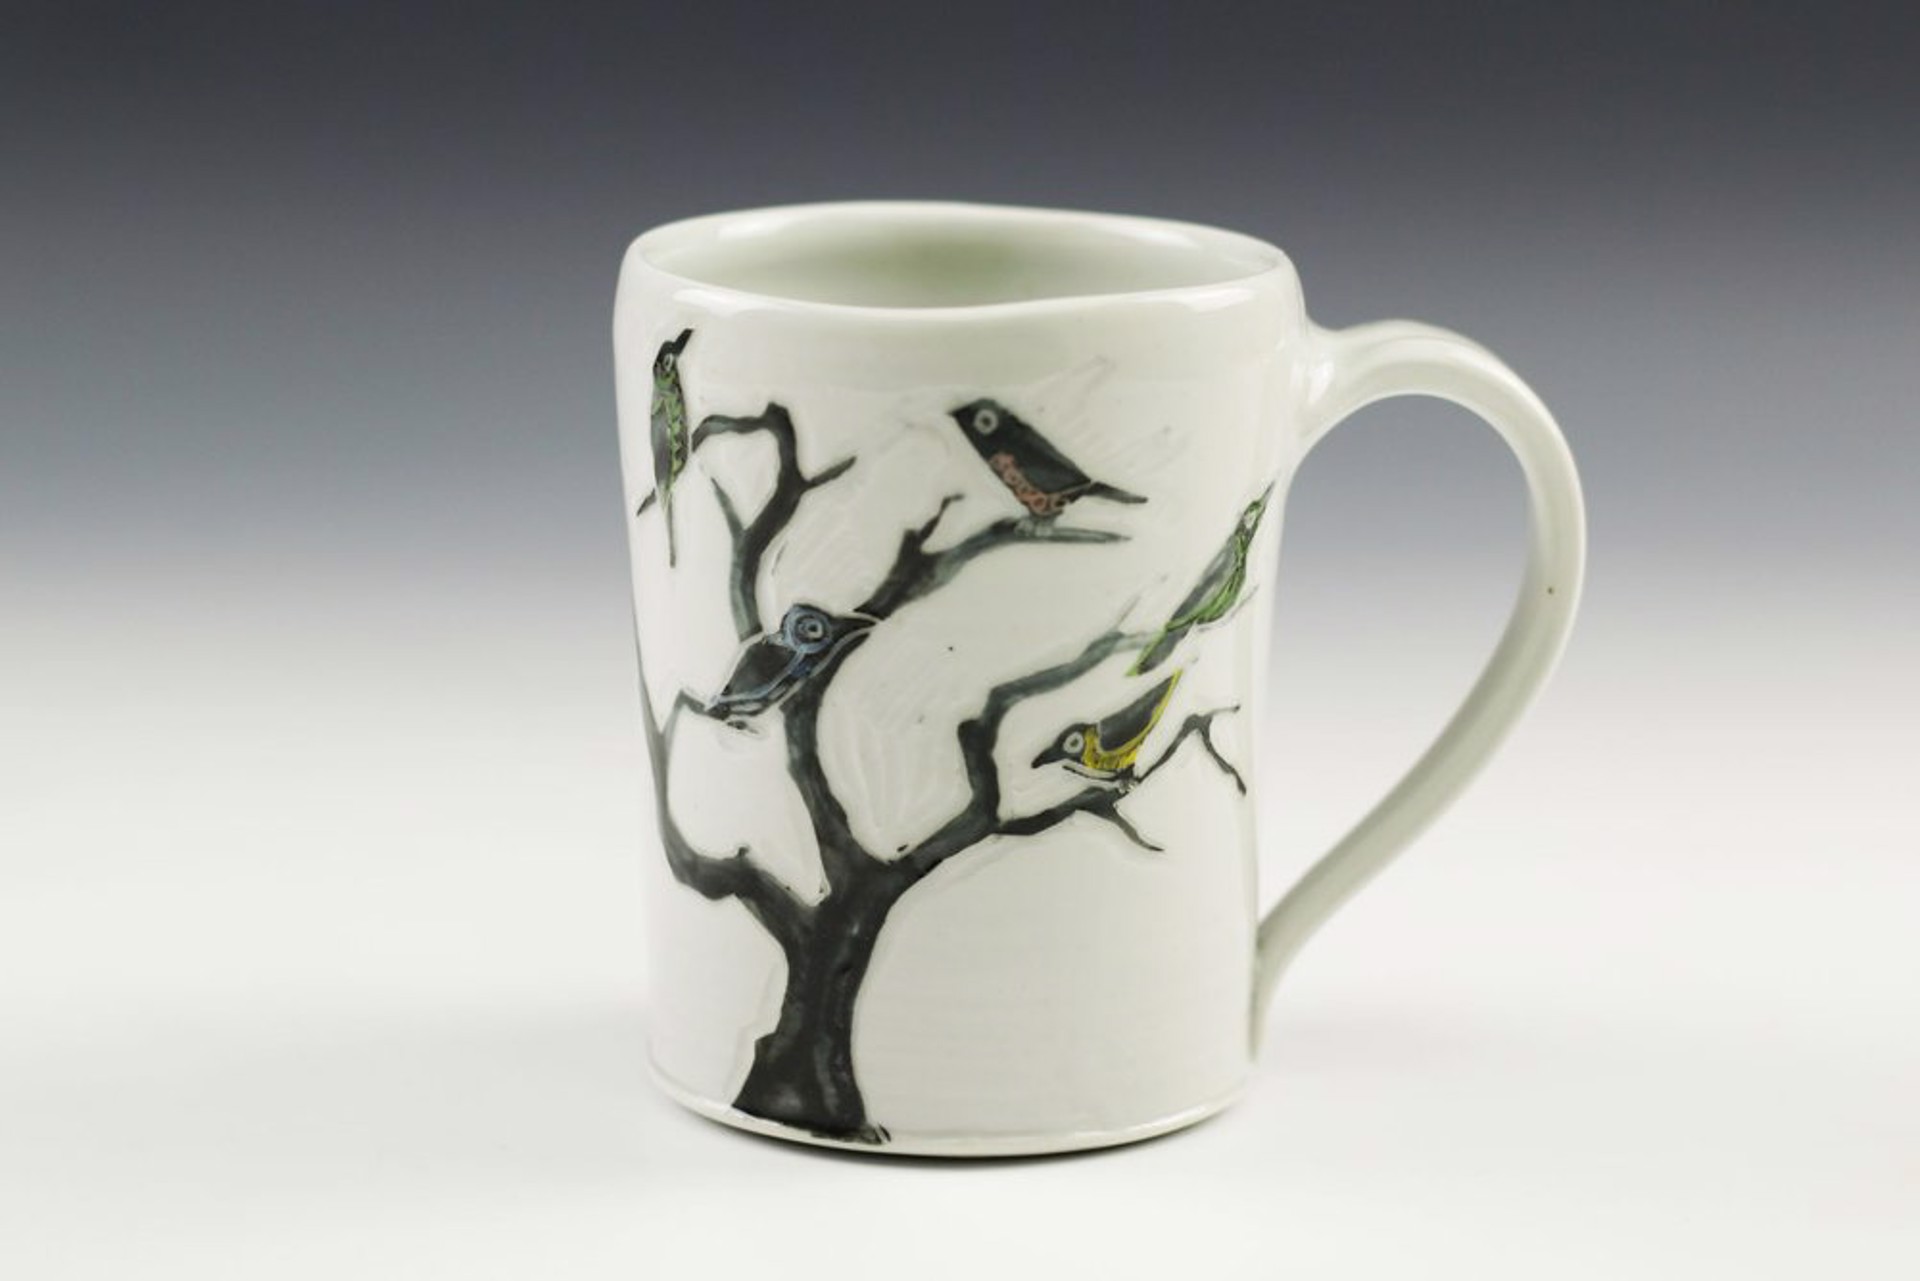 Birds on a Tree Mug by Glynnis Lessing